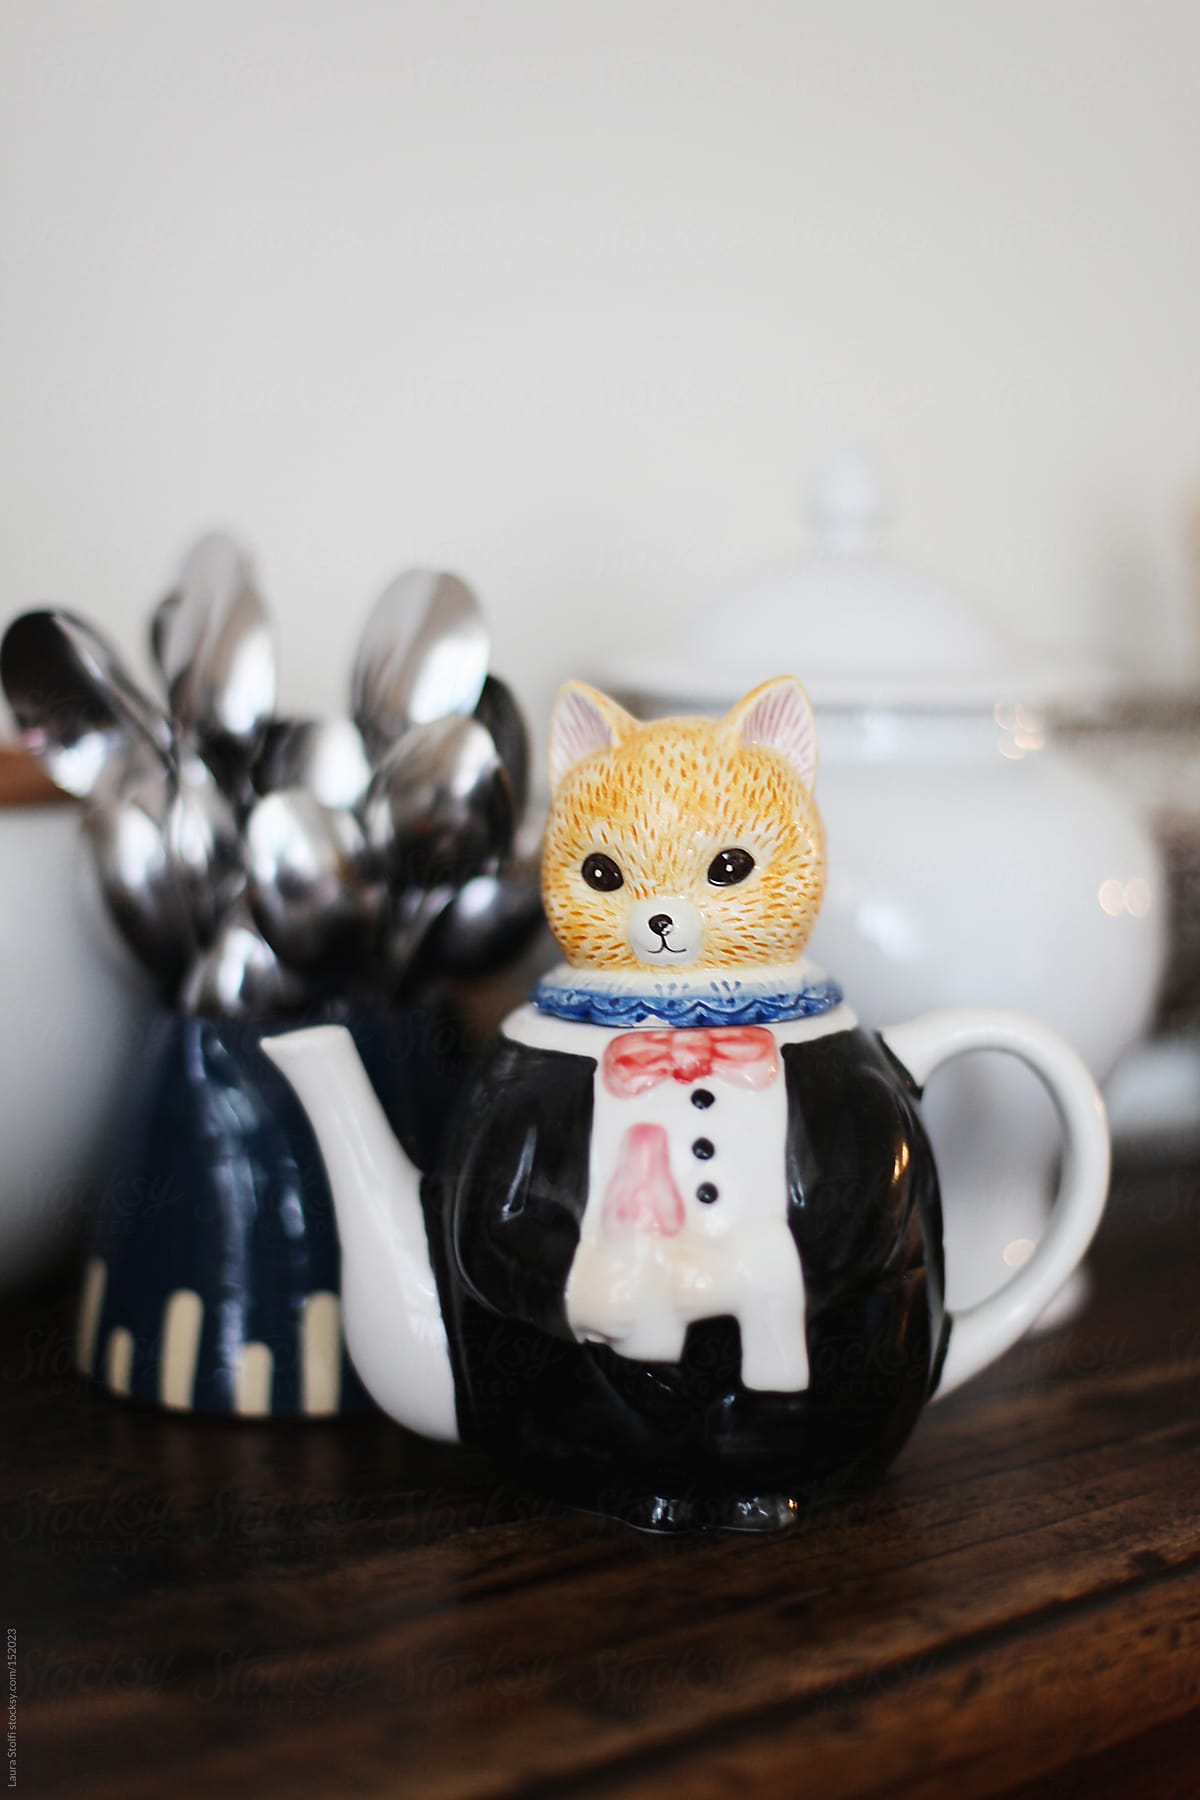 Teapot shaped in a frac dress wearing cat